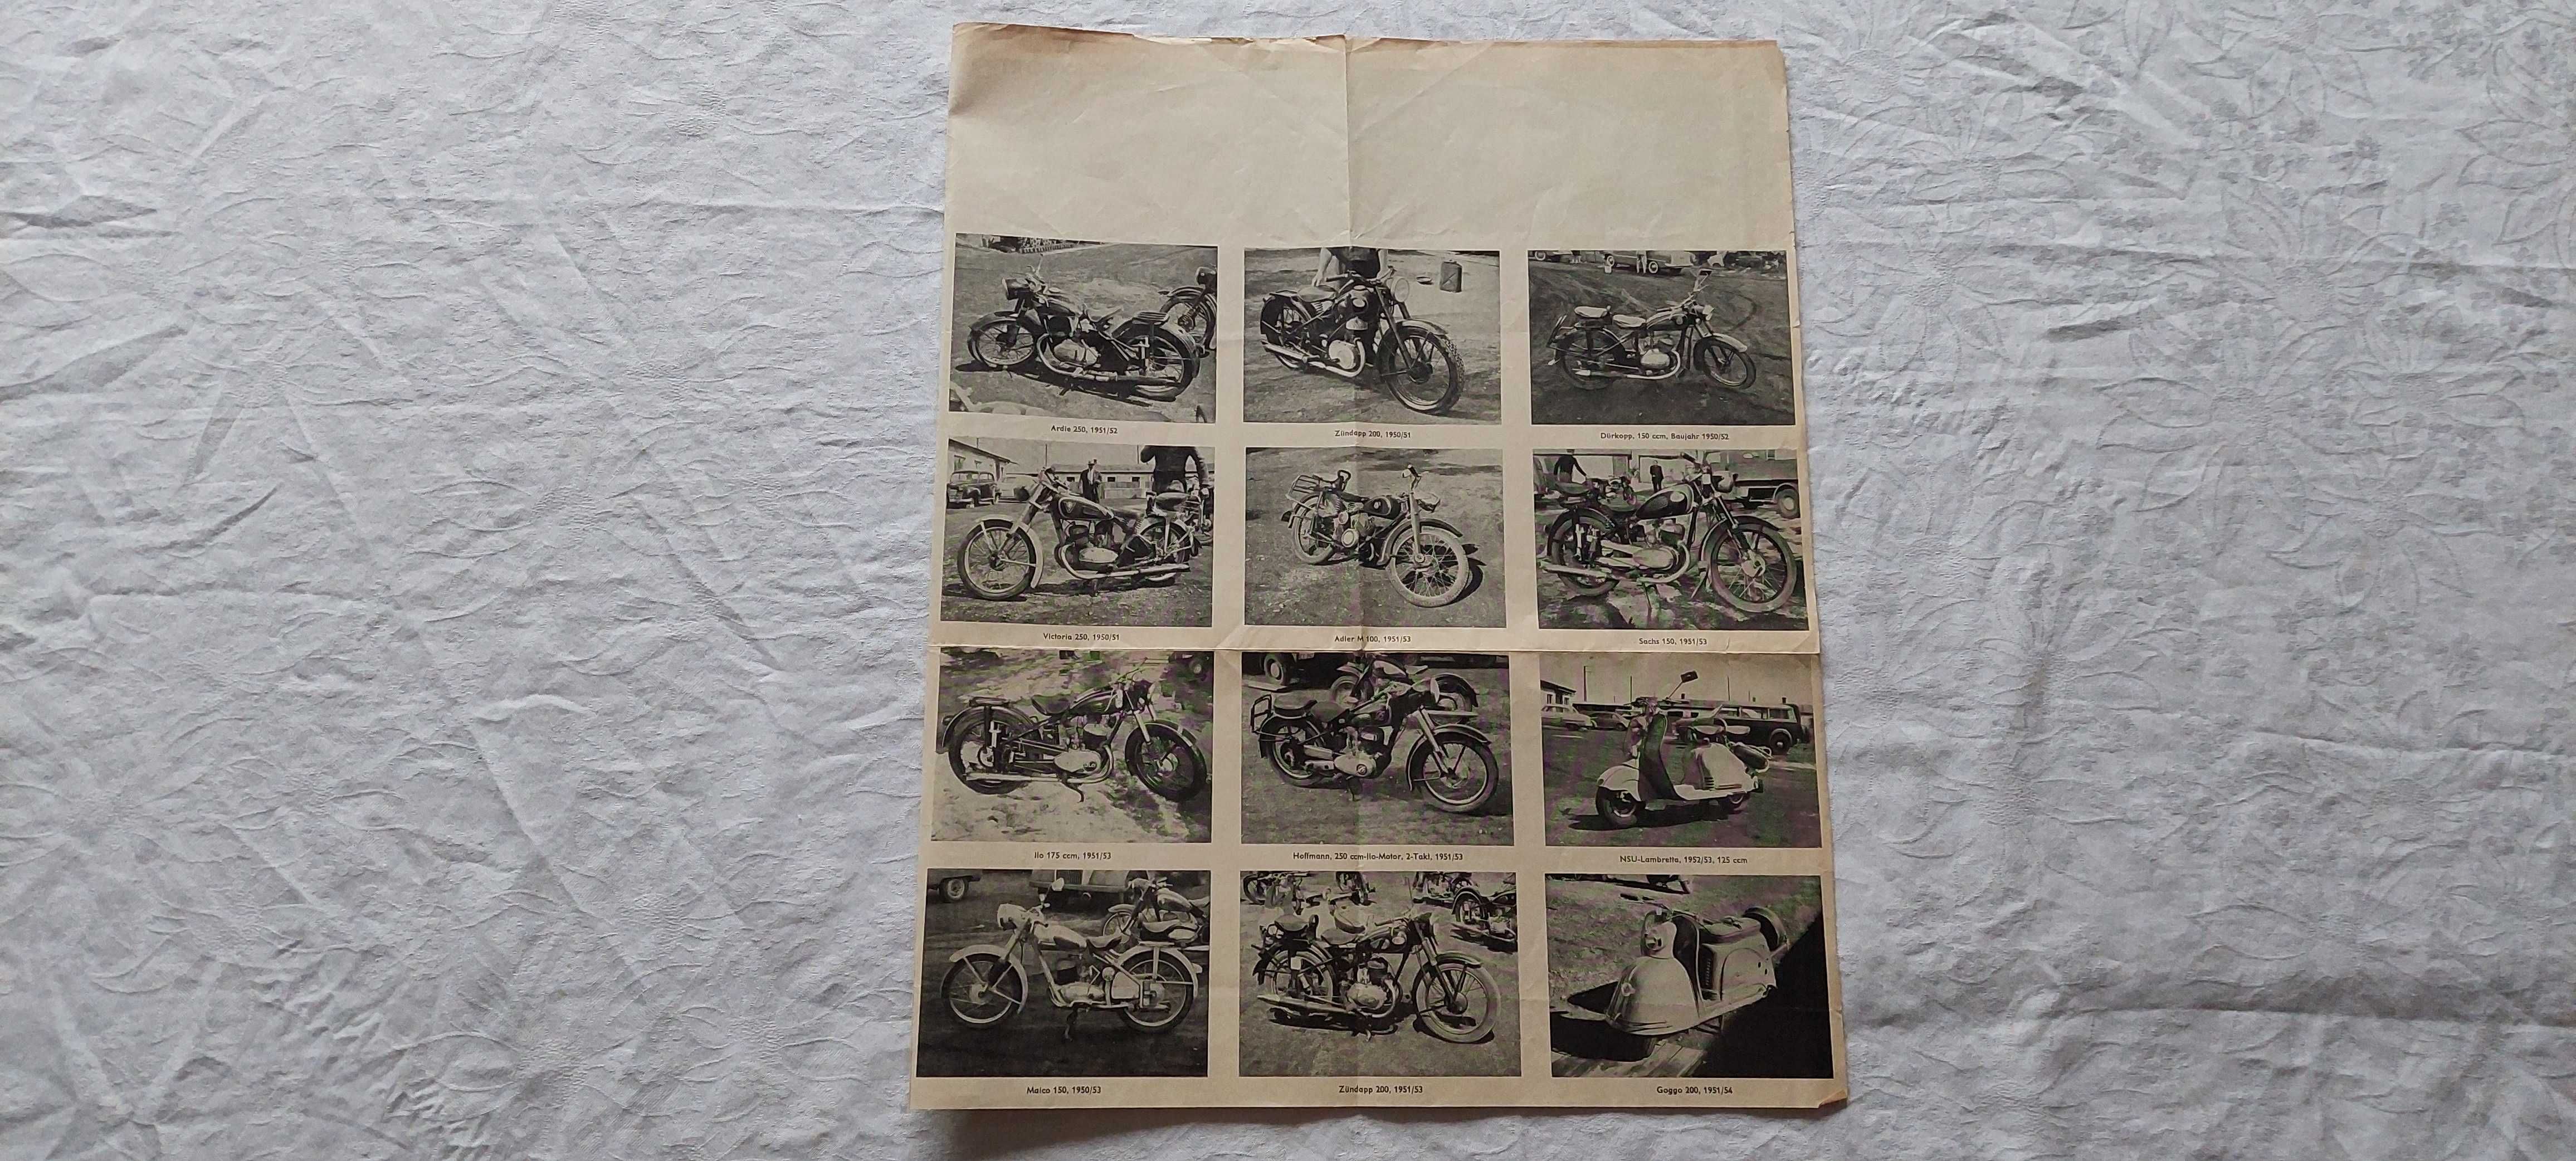 Prospekt reklamowy motocykli i samochodów 1960 r. (BMW/NSU/DKW/OPEL)